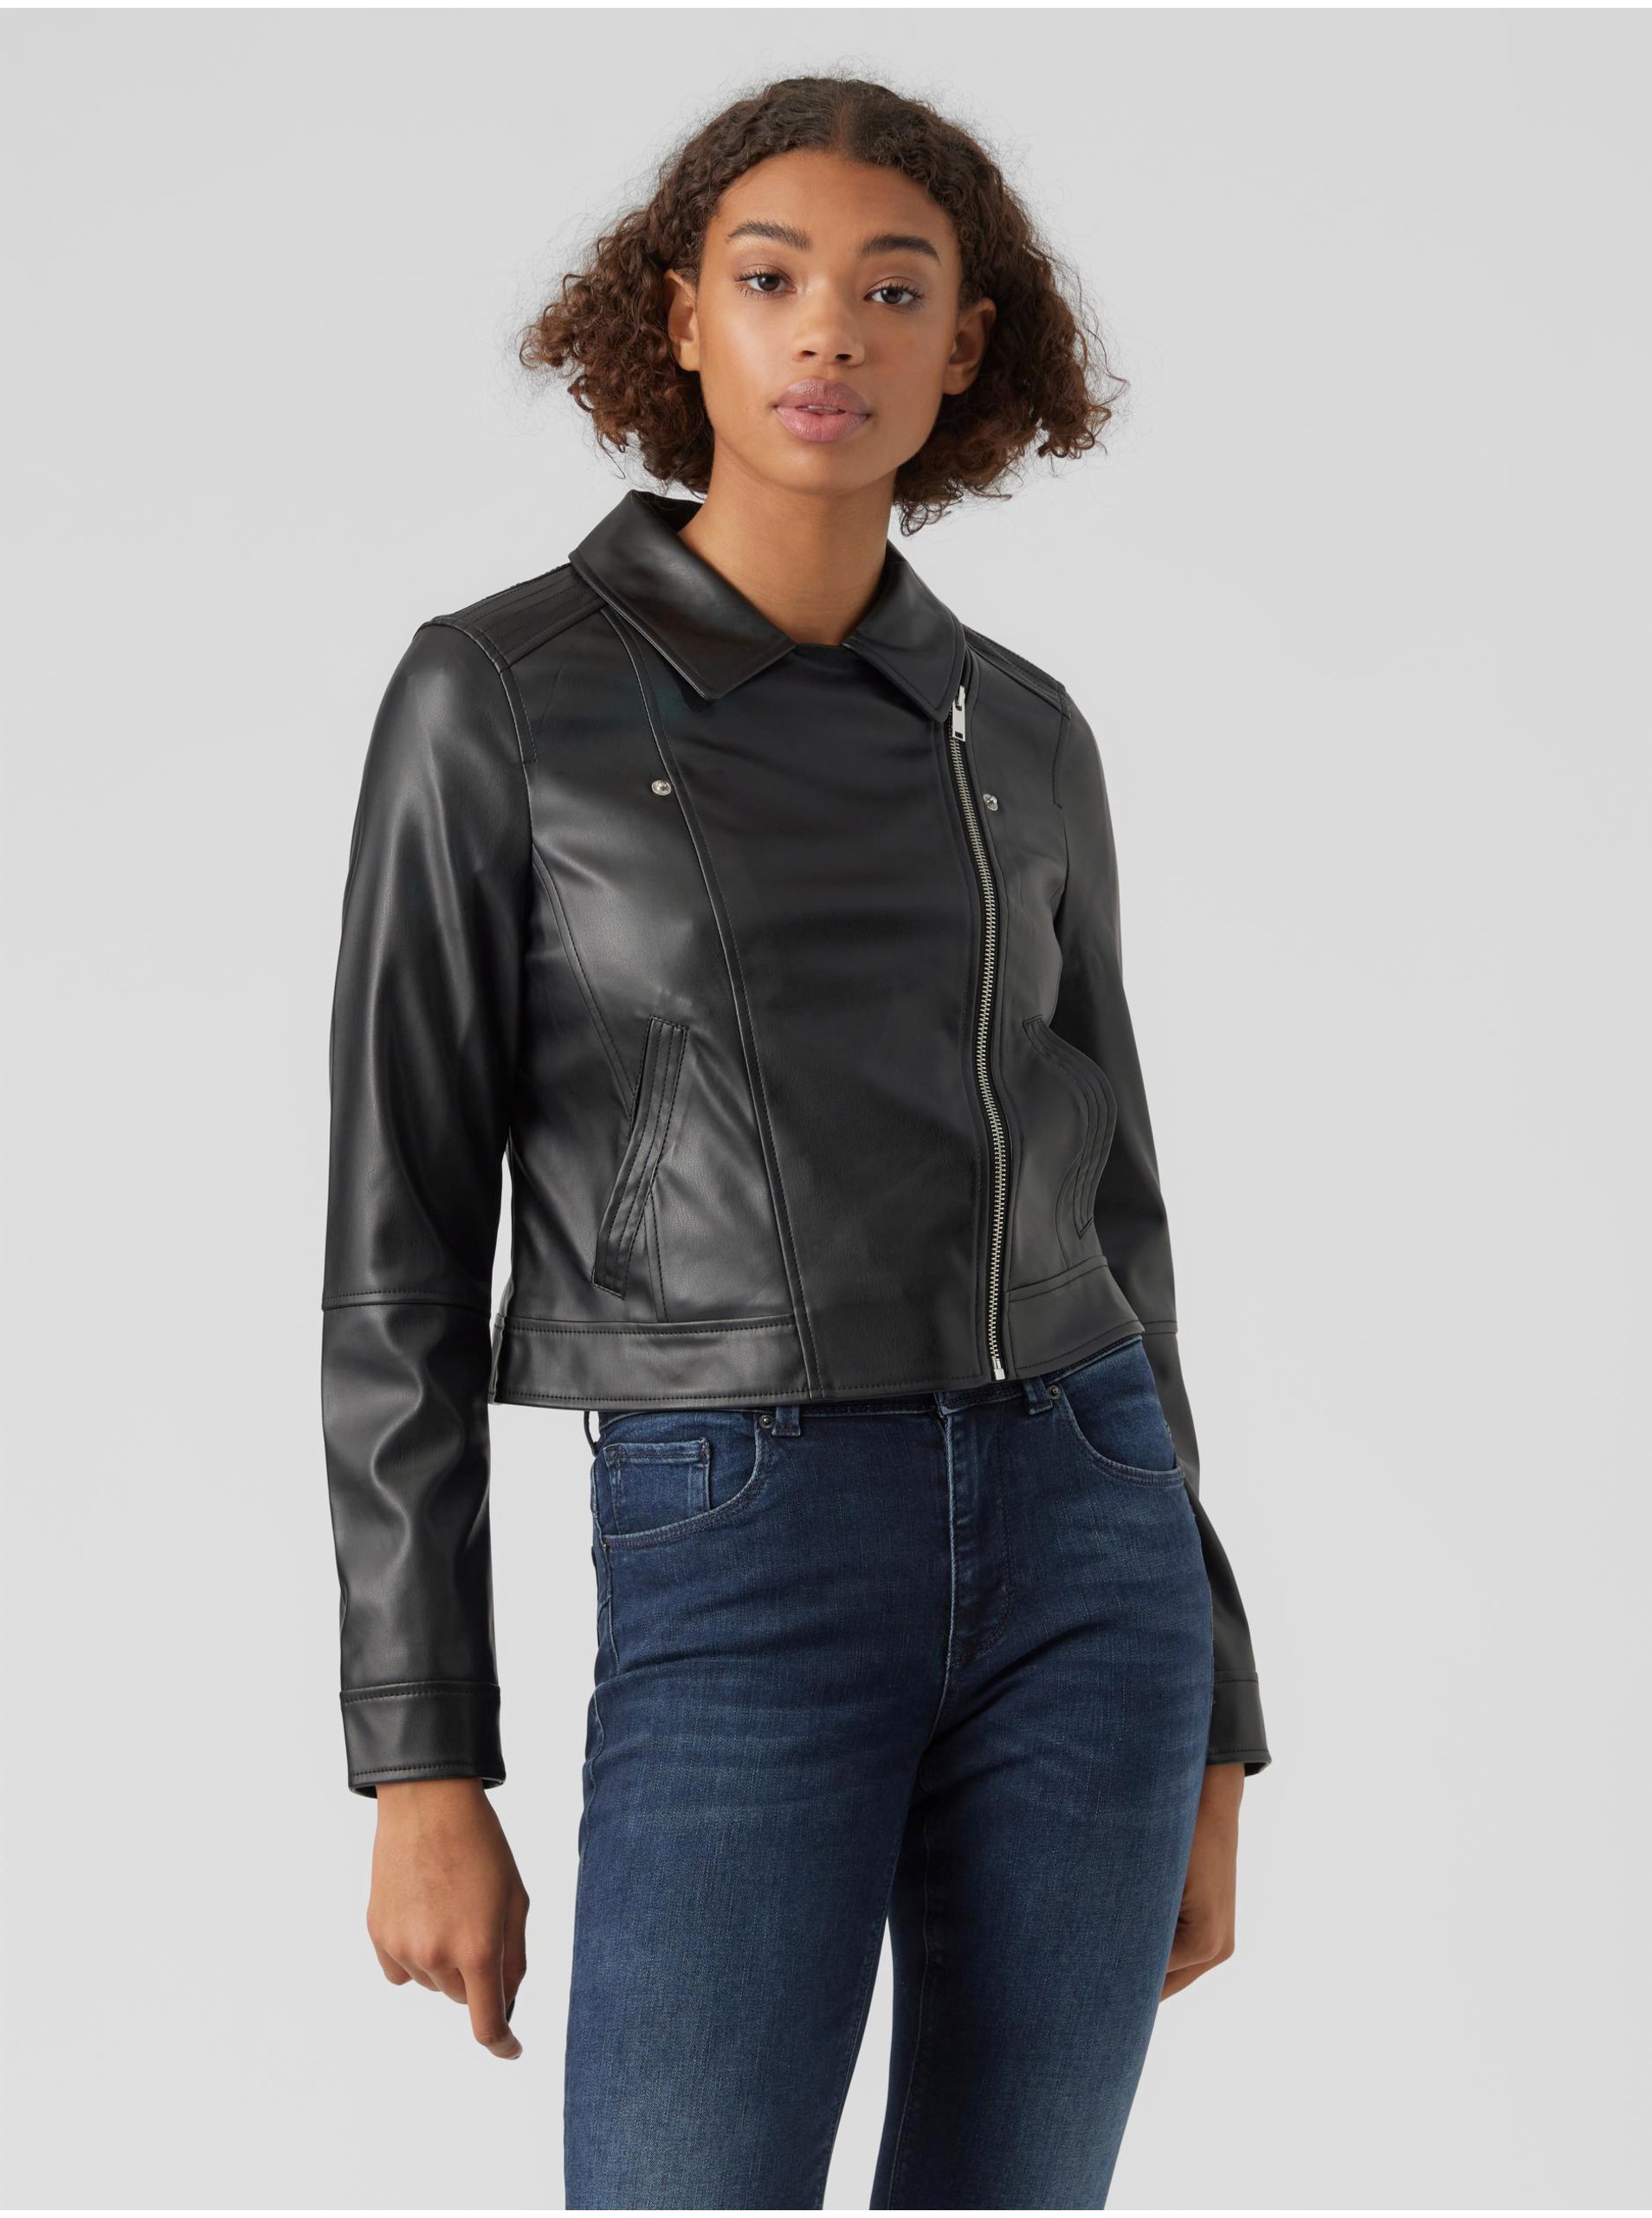 Women's black faux leather jacket VERO MODA Bella - Women